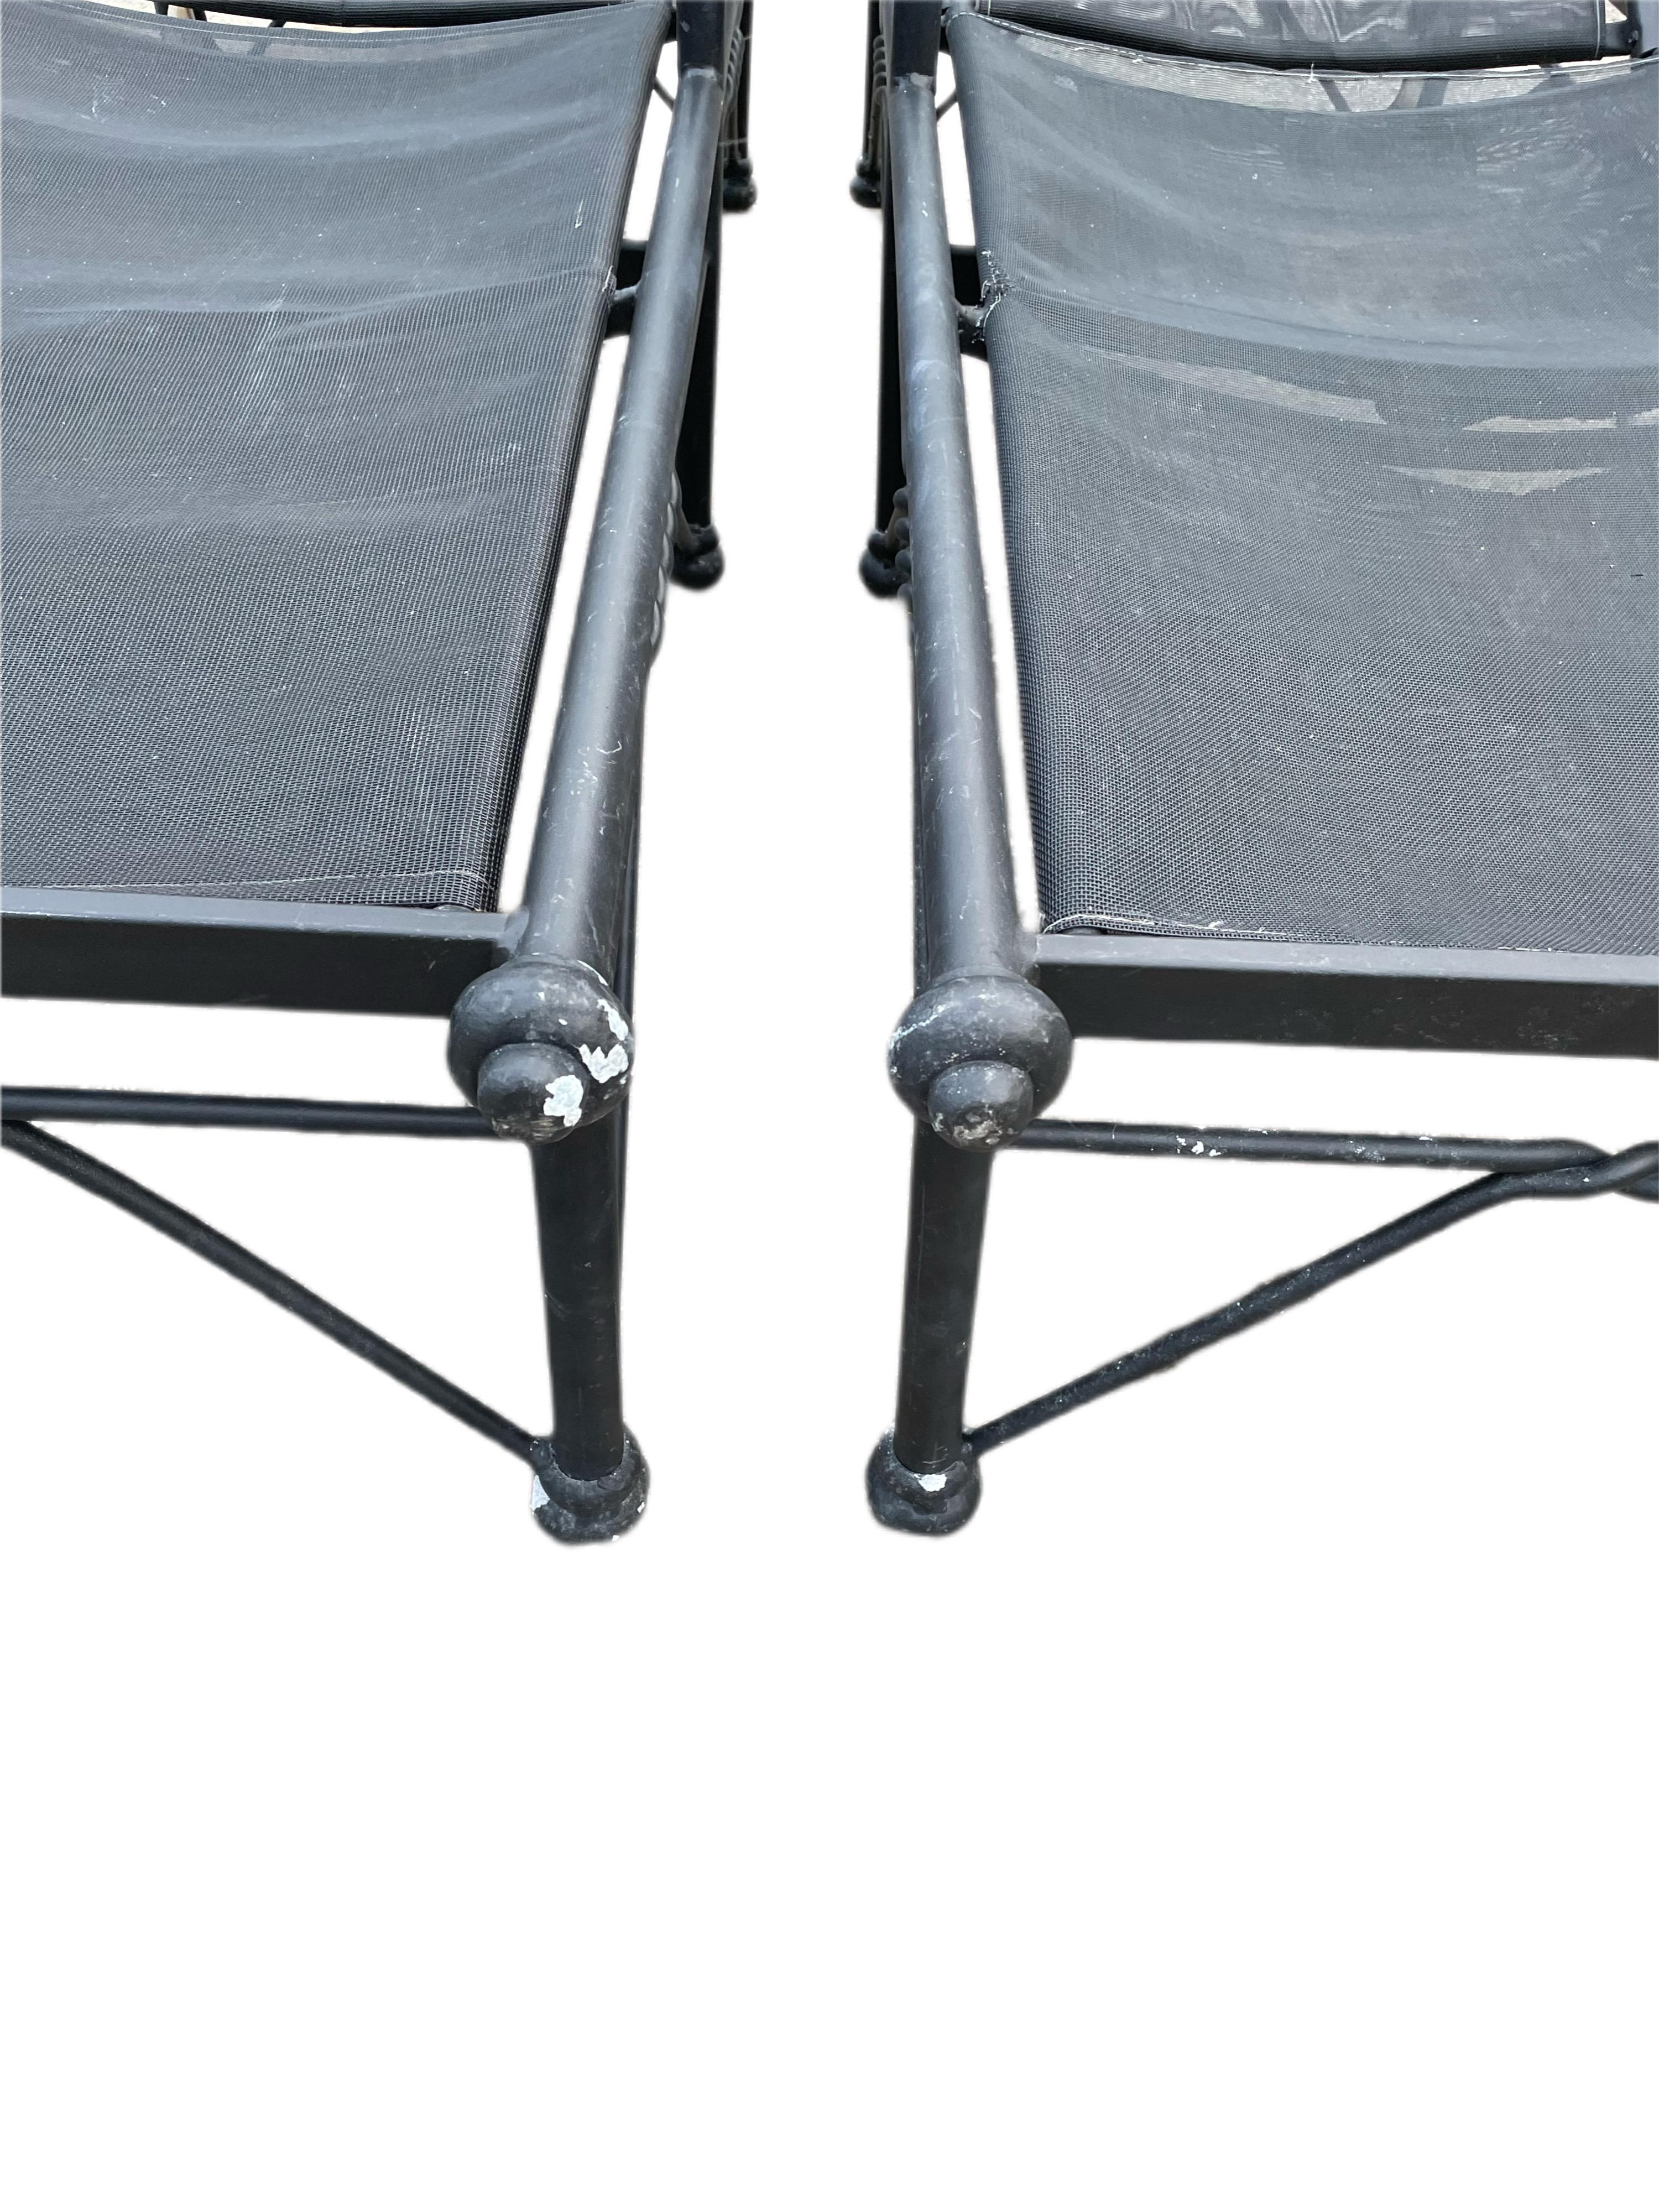 Giacometti inspirierter Chaise Lounge Stuhl - ein Paar

Perfekt für jede Terrasse, jeden Pool oder jede Veranda

Sitze und Rückenlehnen aus abnehmbarem Netzgewebe für eine einfache Reinigung und eine schnelle Trocknungszeit. 

Verstellbare